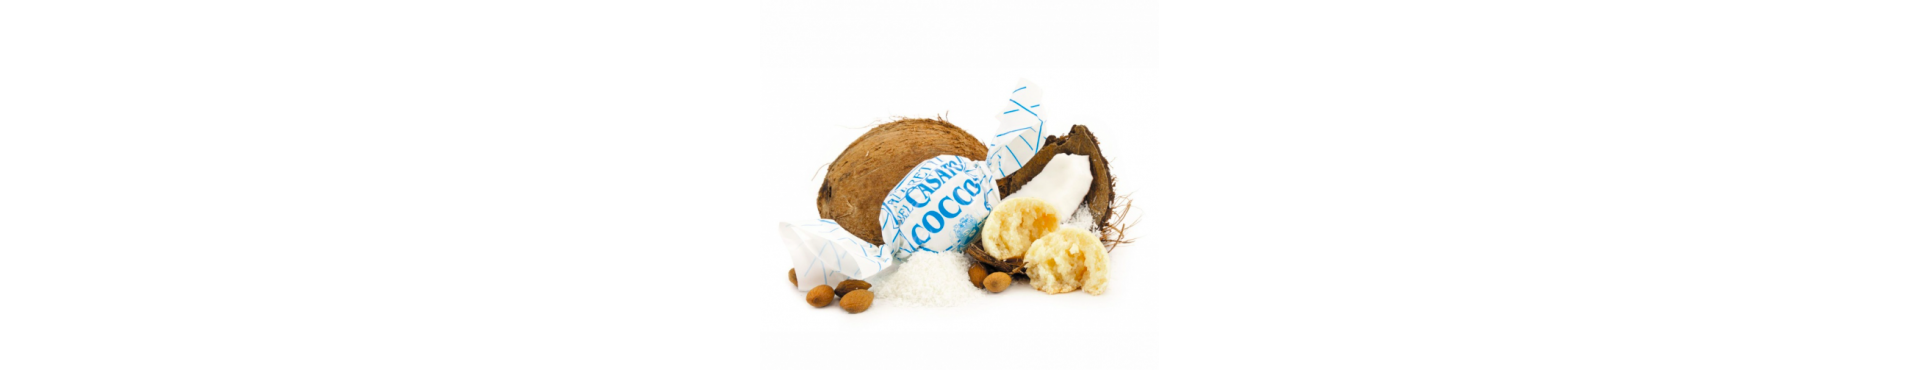 Biscotti al cocco senza glutine e lattosio, vendita online